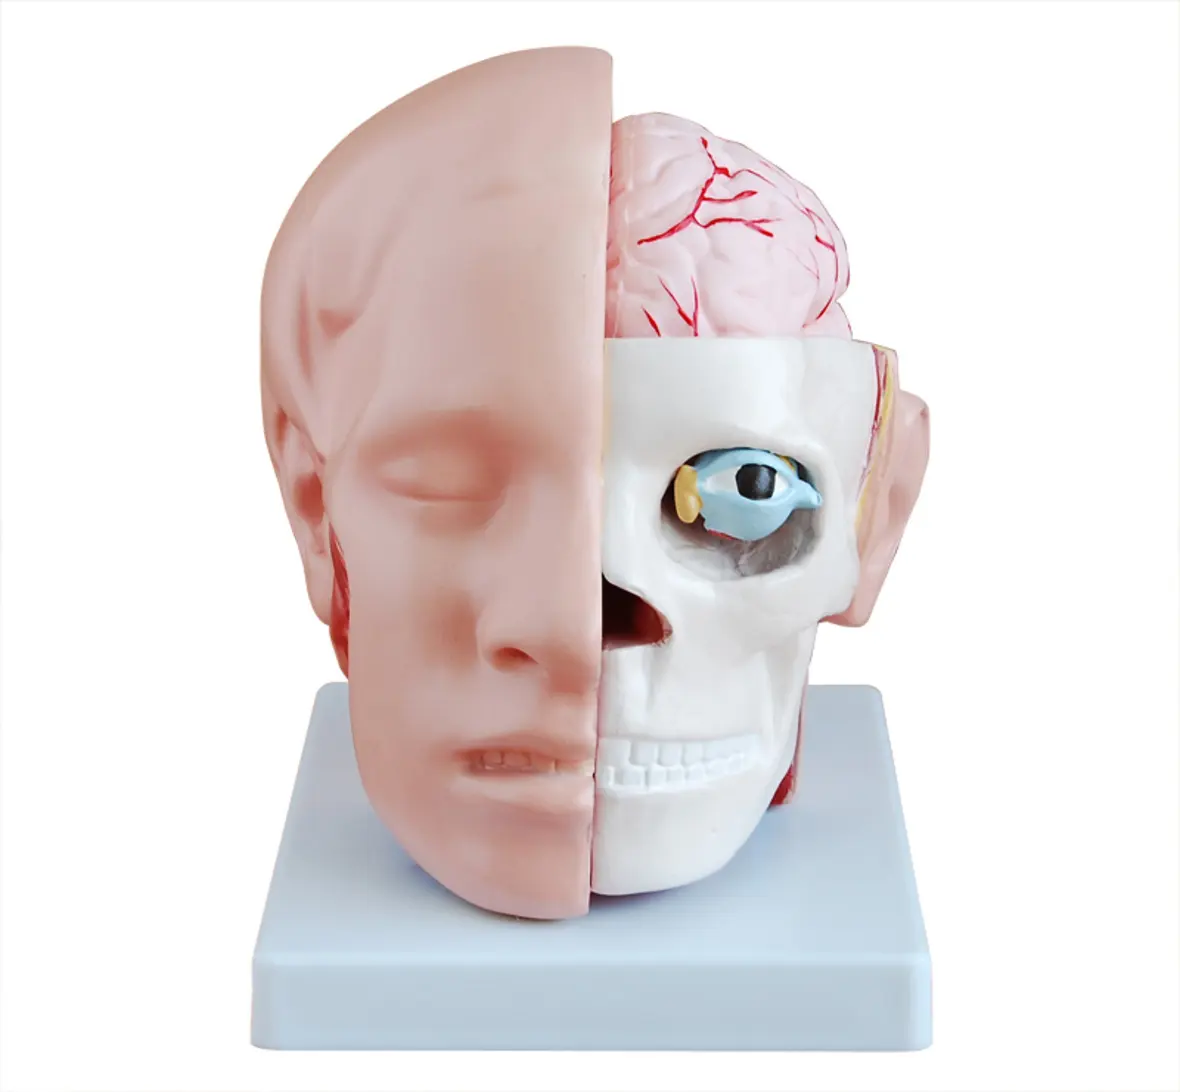 चिकित्सा विज्ञान शिक्षण मॉडल पीवीसी 10 भागों संरचनात्मक मॉडल मानव मस्तिष्क के साथ सिर मॉडल